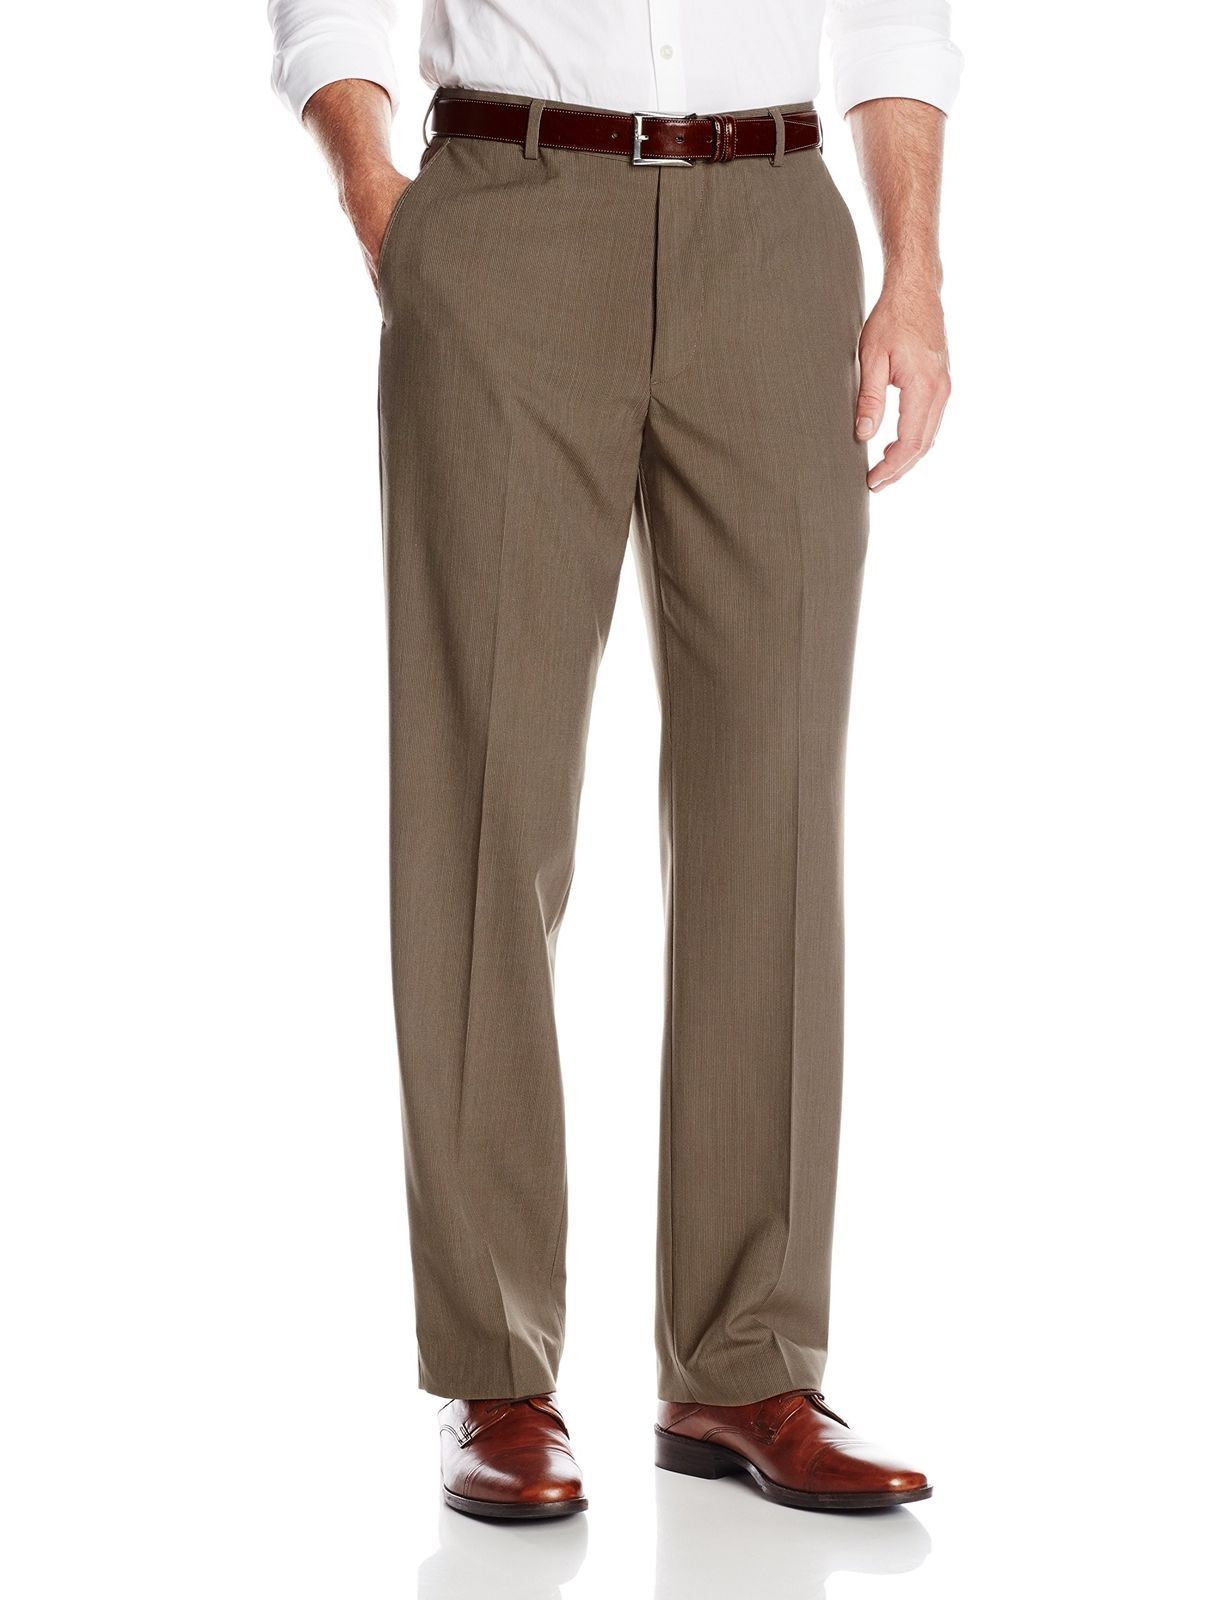 Arrow Men's Taupe Flat Front Suit Separate Pant, Khaki, 40W x 29L - Pants